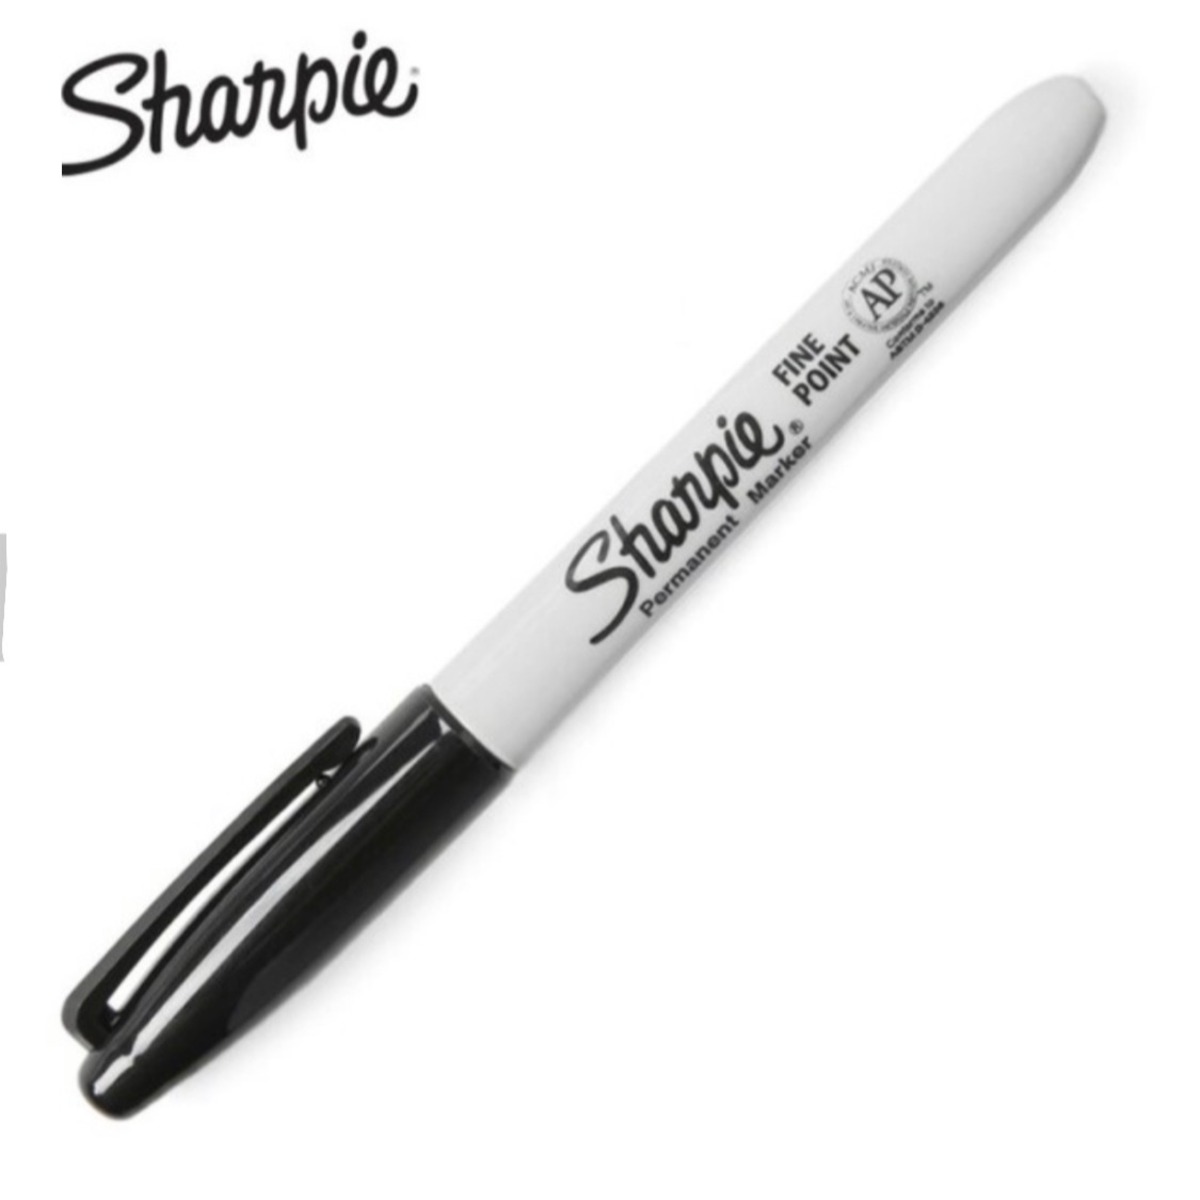 Sharpie Fine Point Marker 5本組 シャーピー ファインポイント マーカーペン 油性ペン 国内送料無料 Soni Co